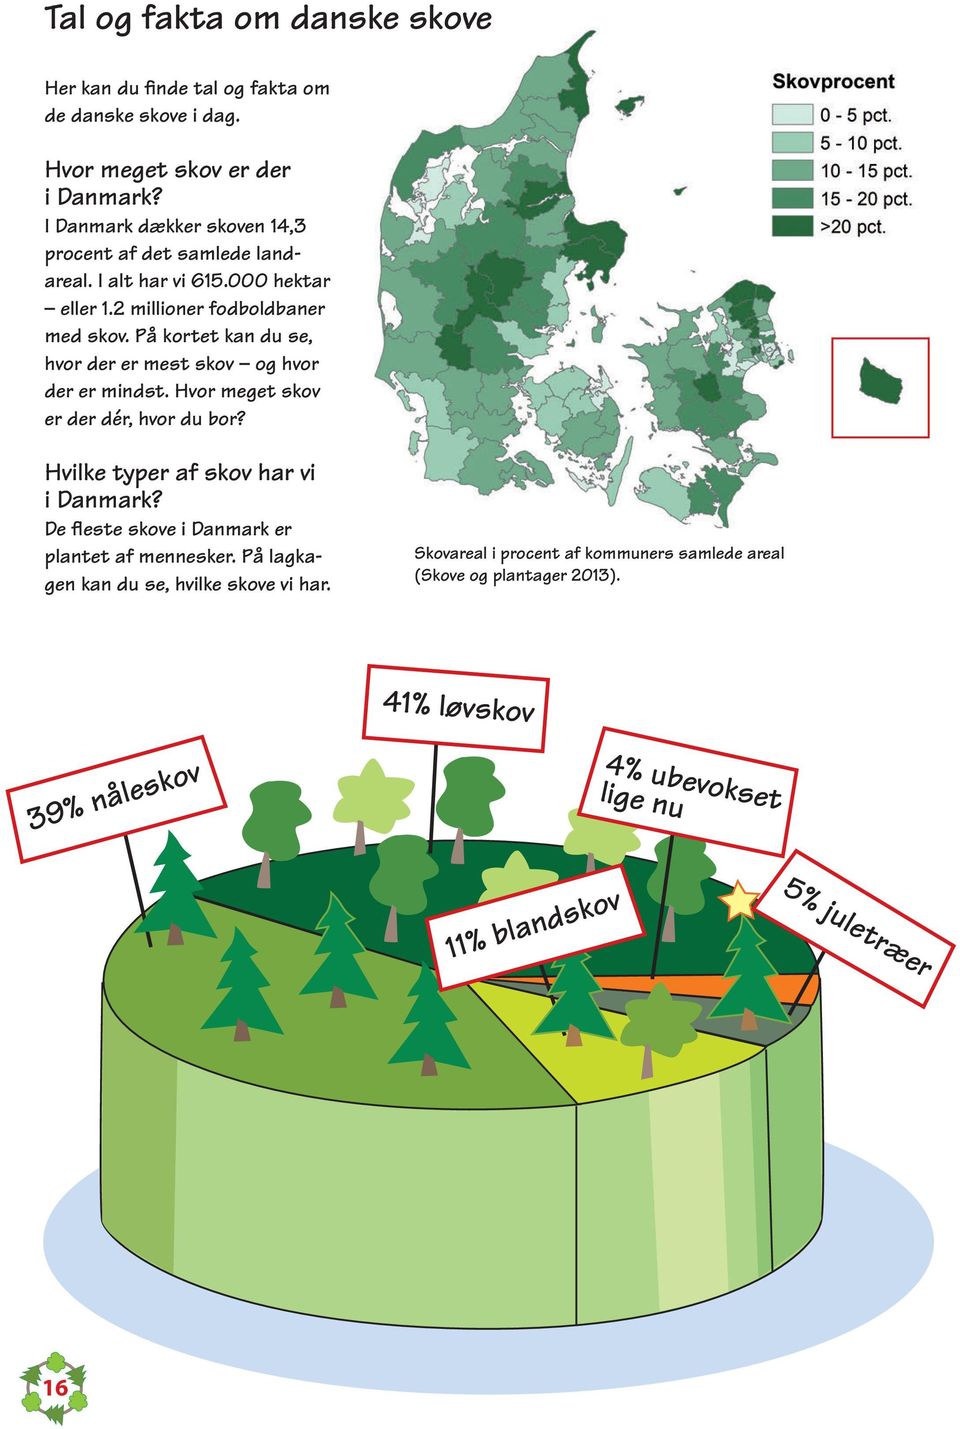 På kortet kan du se, hvor der er mest skov og hvor der er mindst. Hvor meget skov er der dér, hvor du bor? Hvilke typer af skov har vi i Danmark?